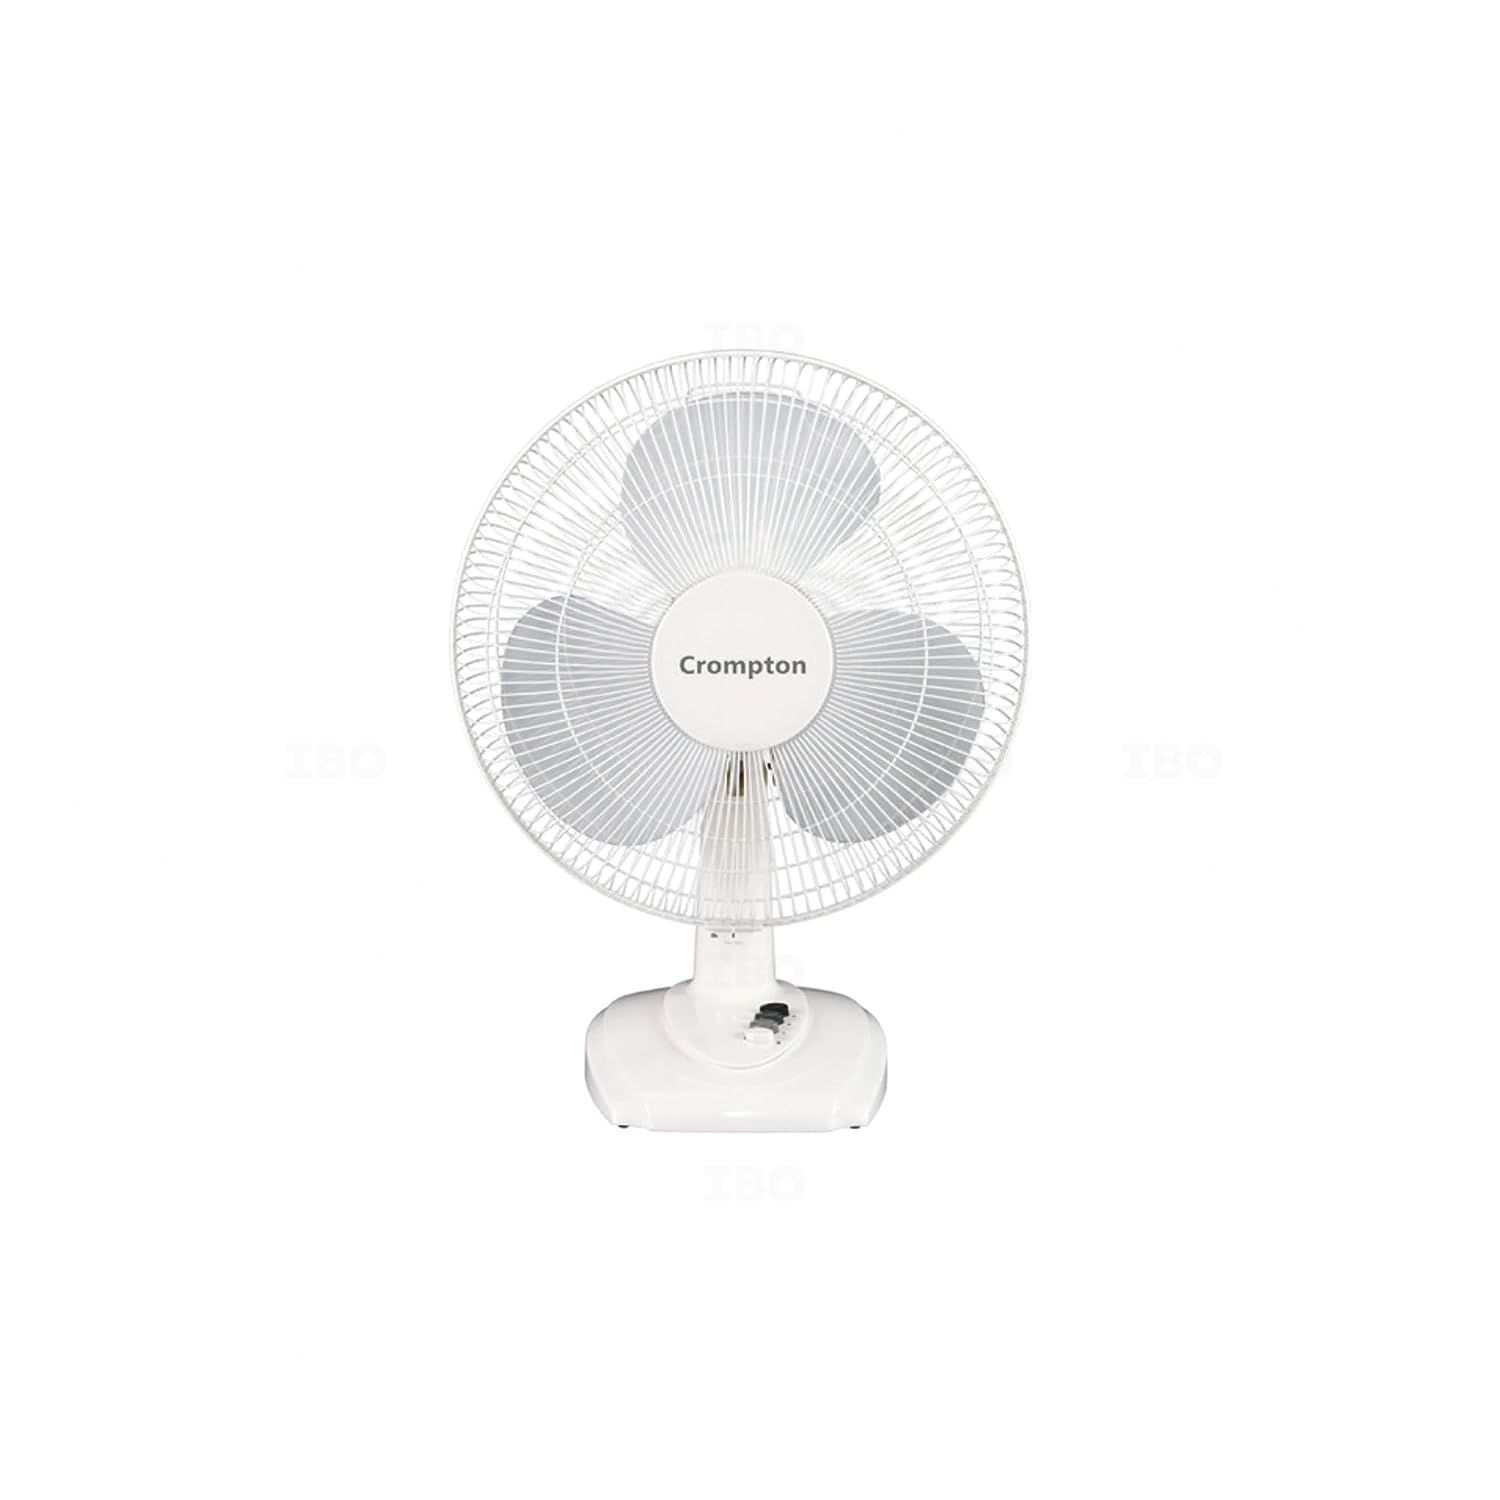 Windstar Farrata Pedestal Fan | 160 watt with 1330 RPM | Crompton